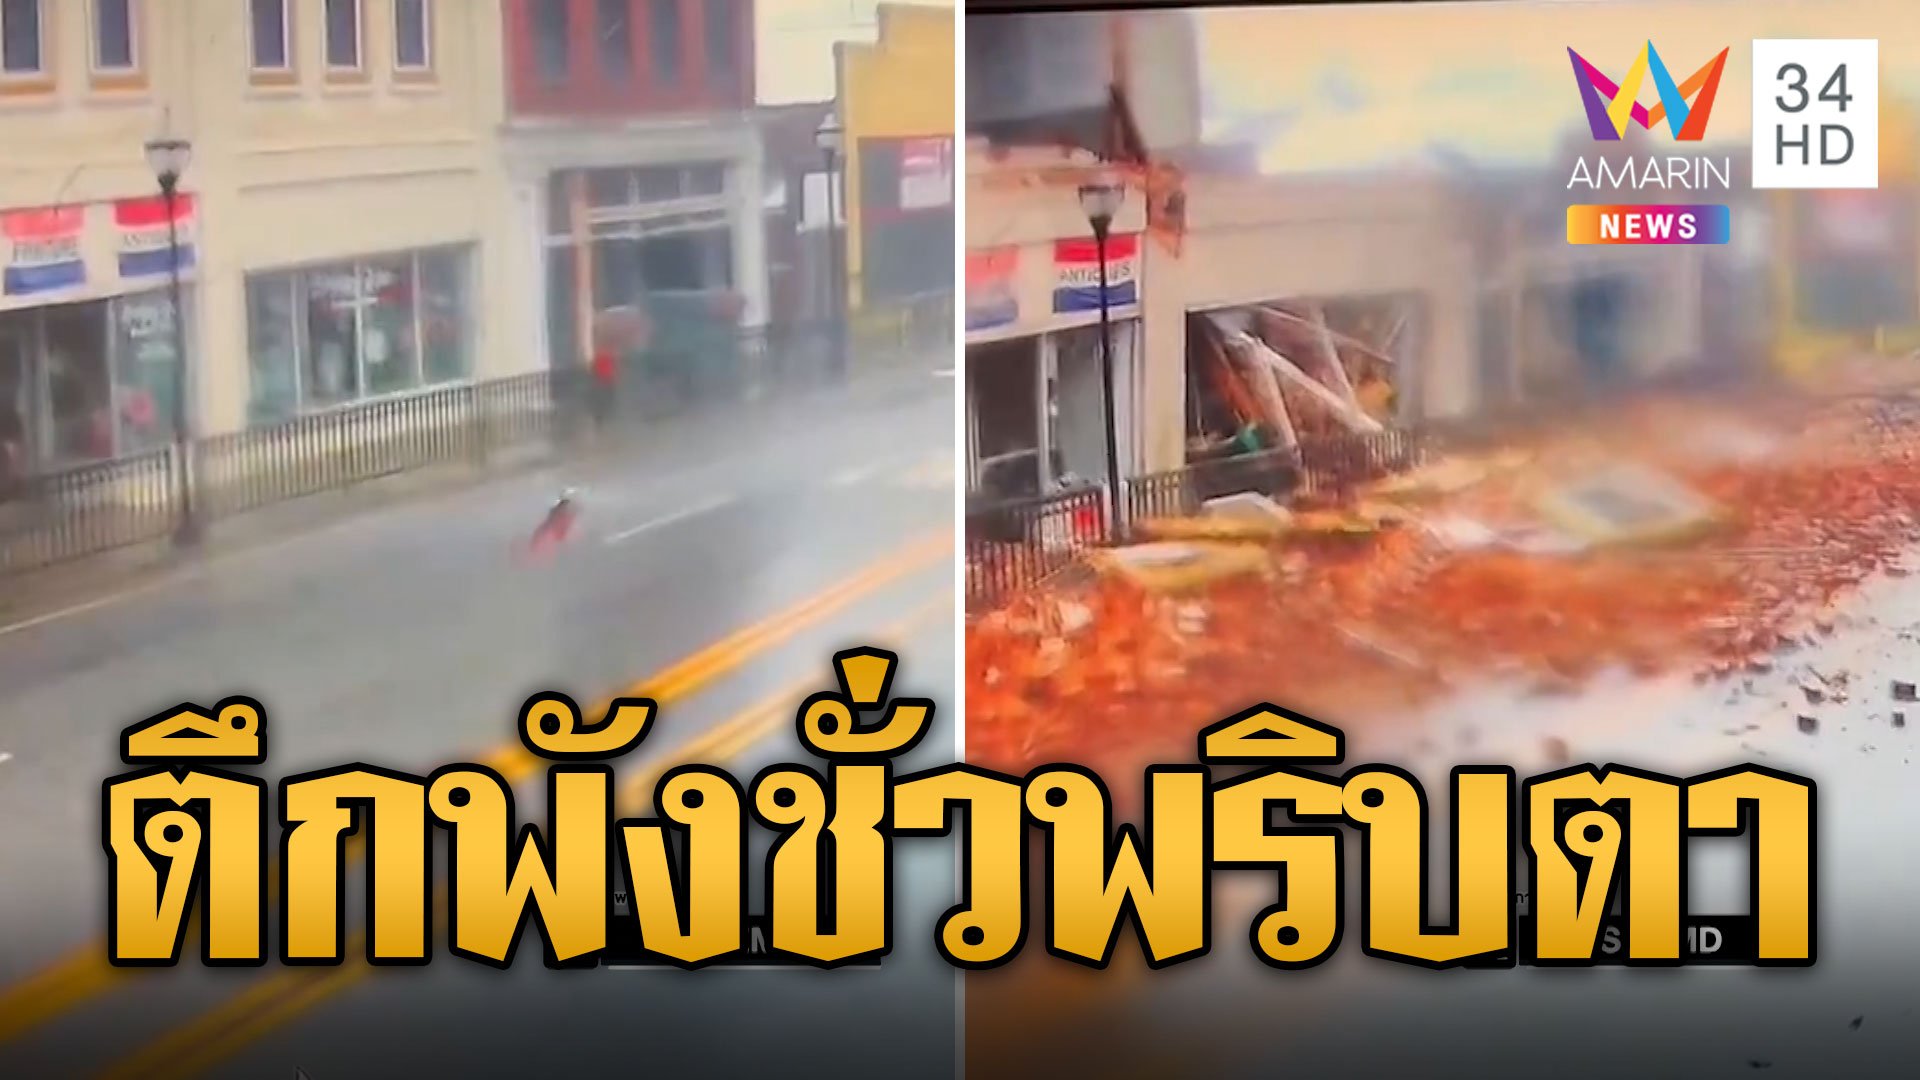 นาทีพายุพัดชั่วพริบตา ตึกถล่มหายไปต่อหน้า | ข่าวอรุณอมรินทร์ | 13 ม.ค. 67 | AMARIN TVHD34